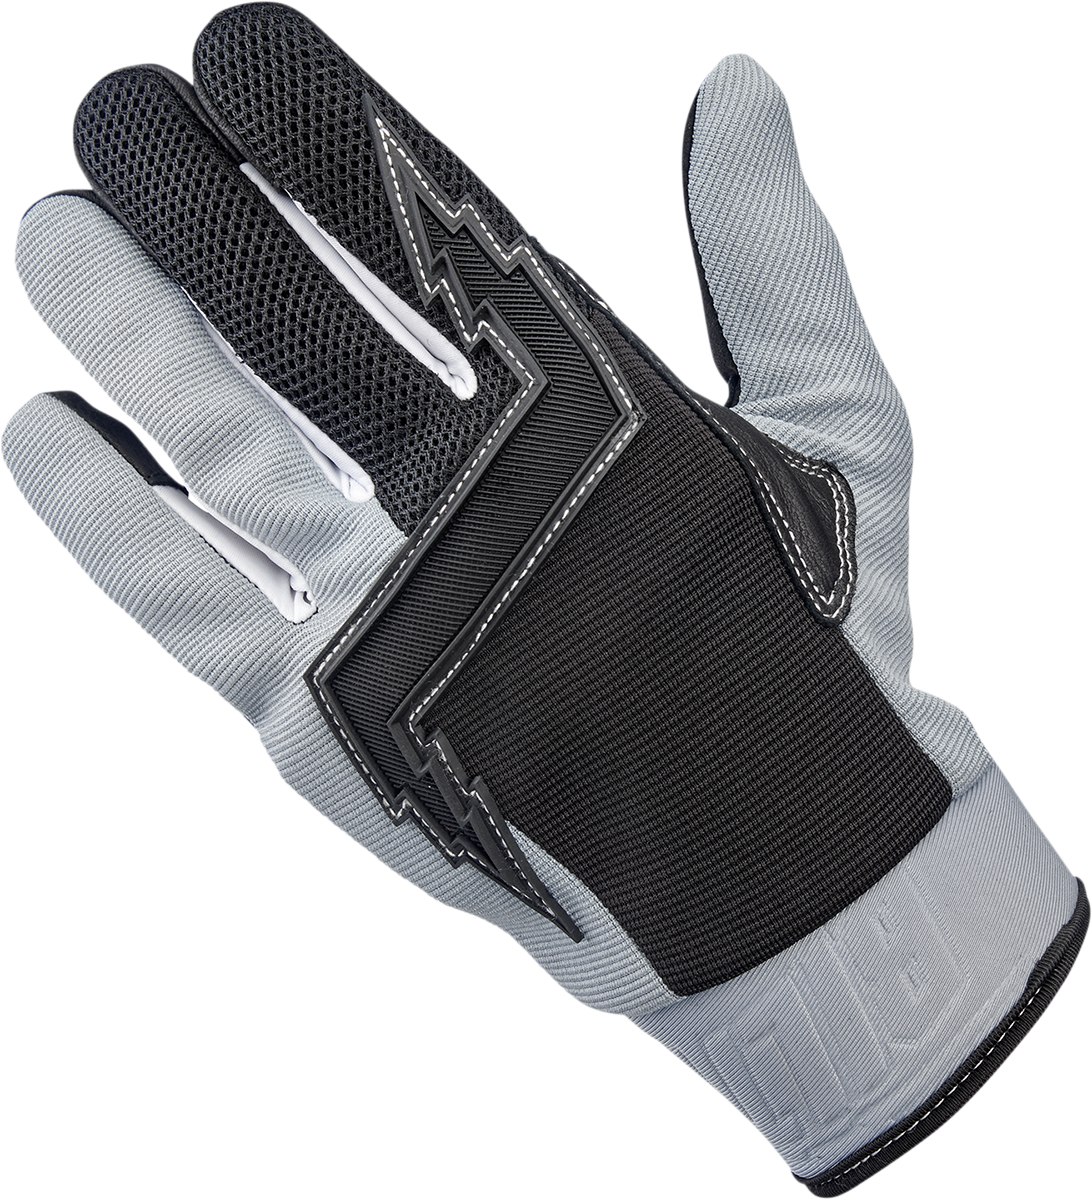 BILTWELL Baja Gloves - Gray - XL 1508-1101-305